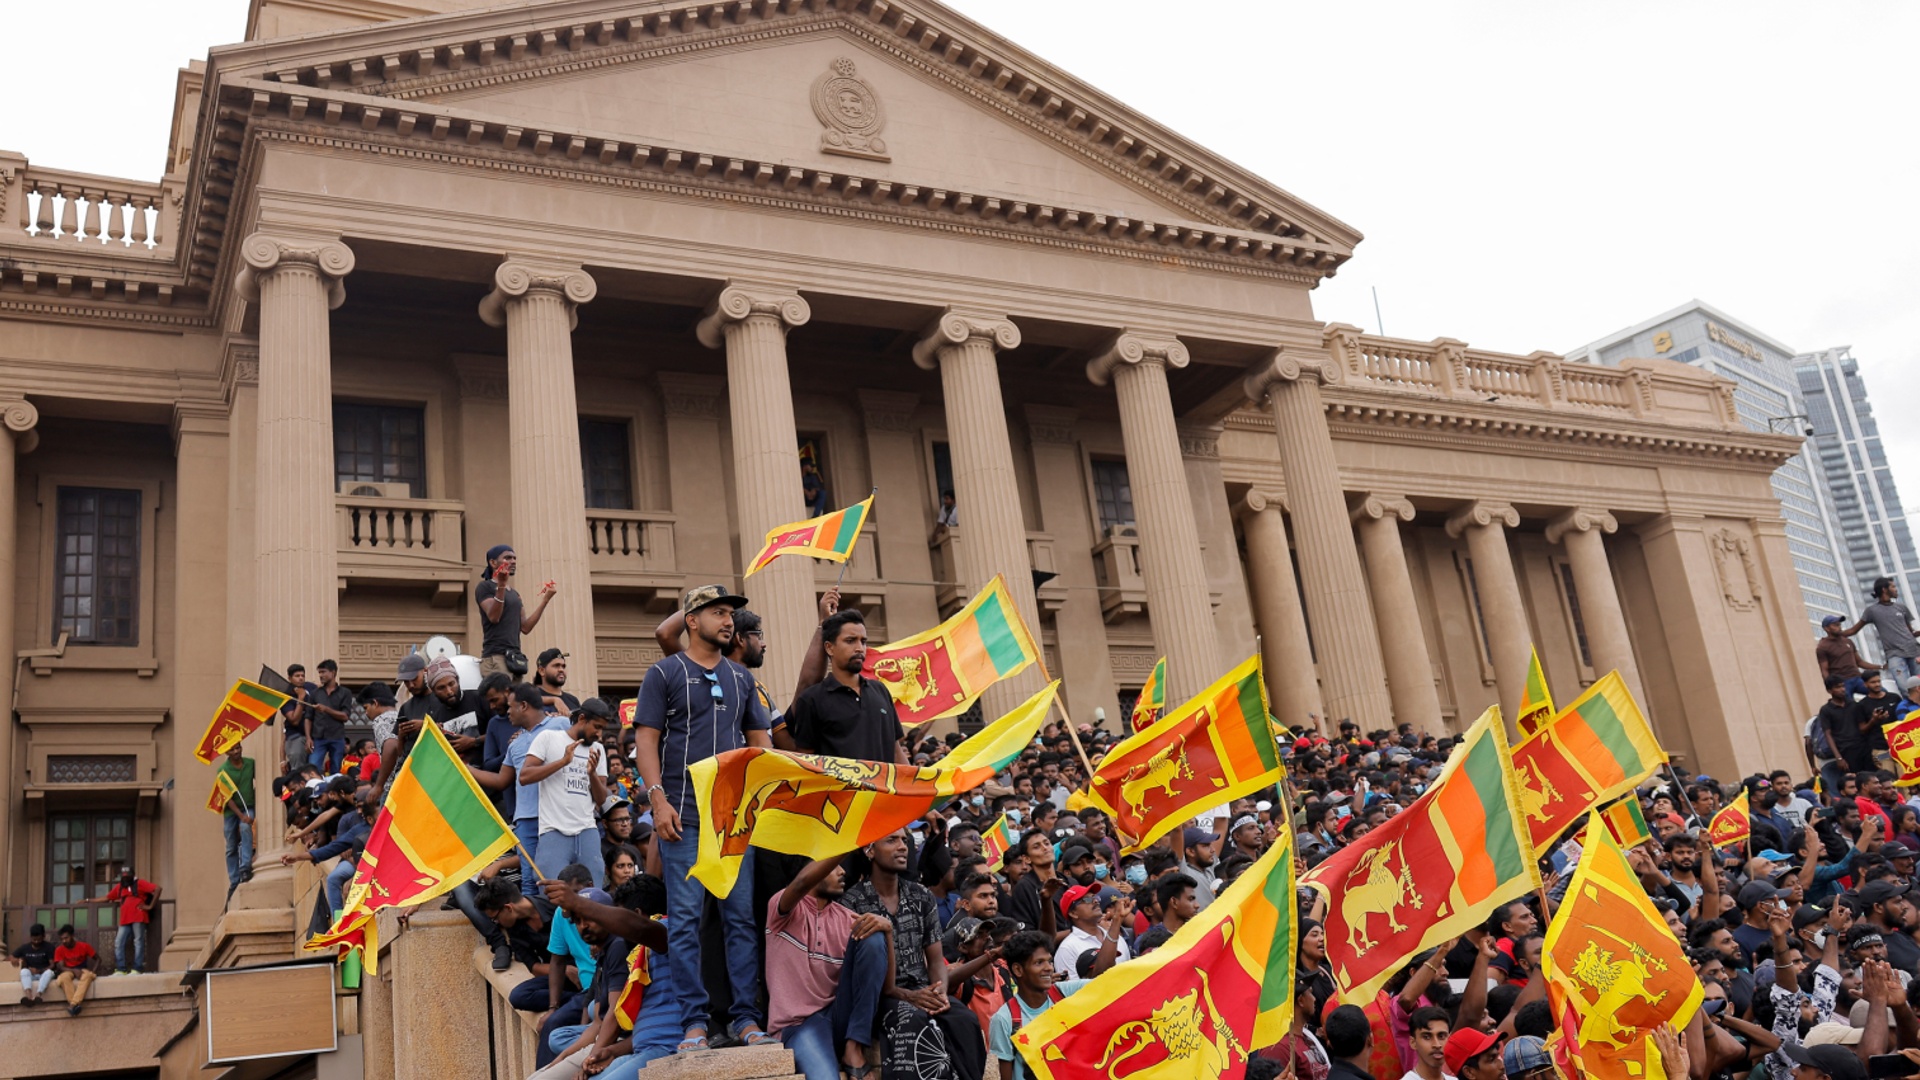 Протестующие на Шри-Ланке захватили резиденцию президента и ждут его отставки